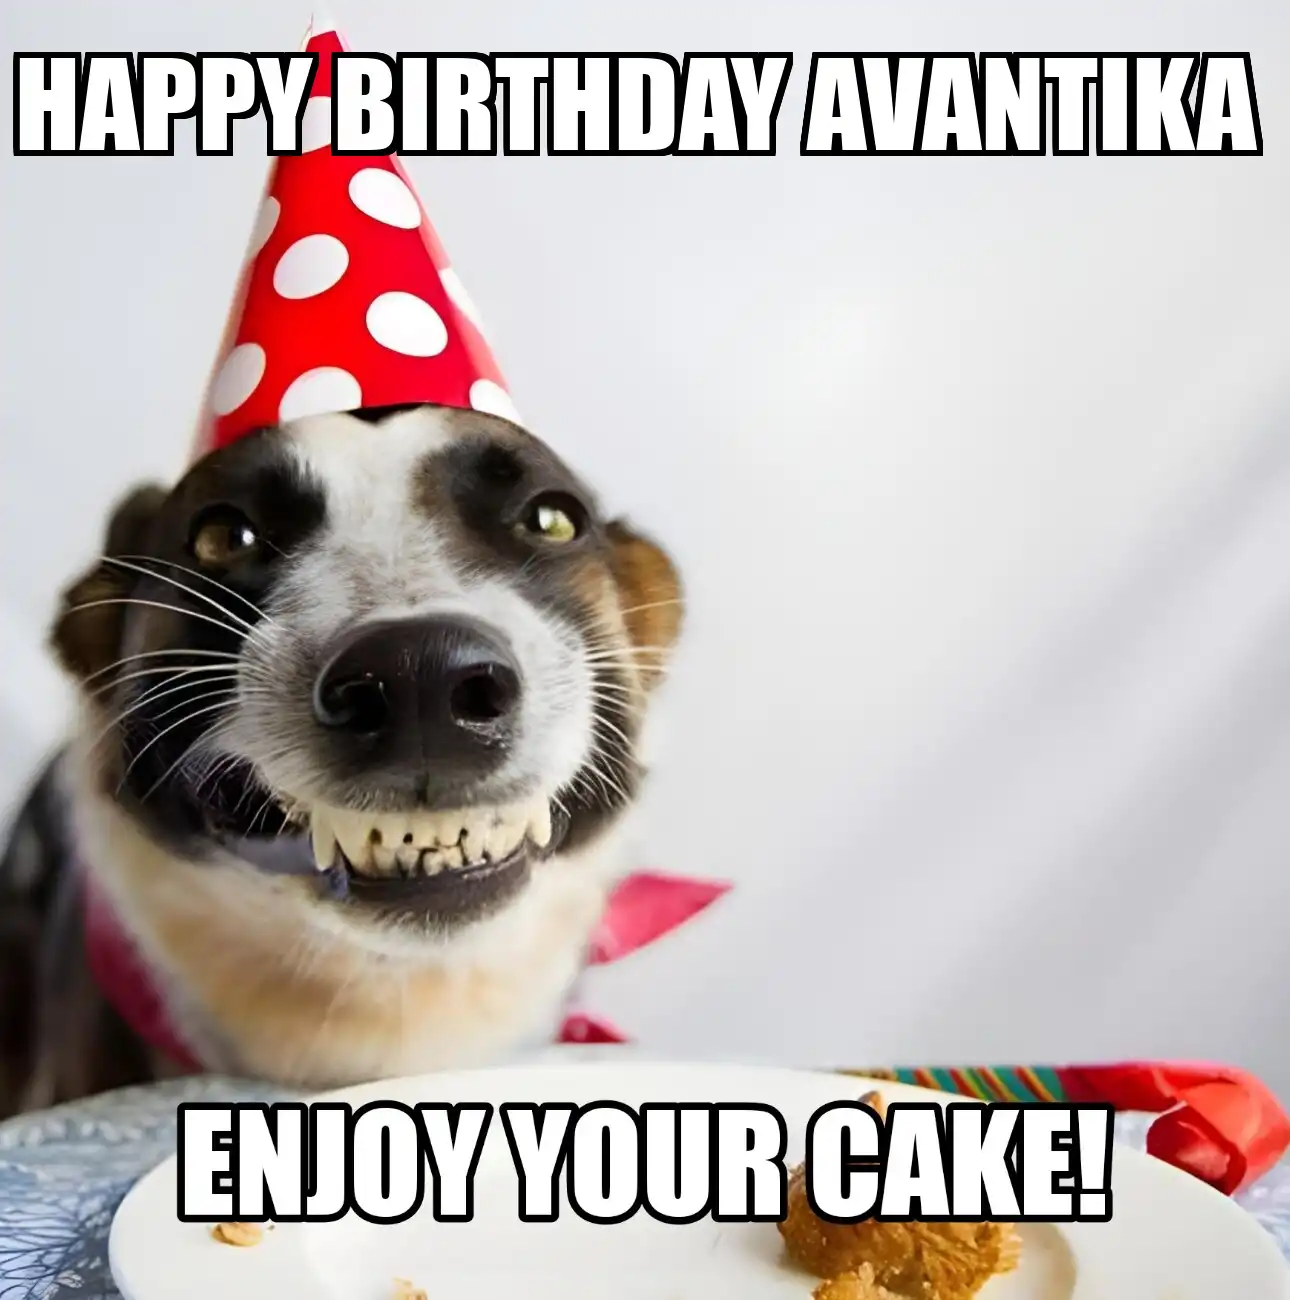 Happy Birthday Avantika Enjoy Your Cake Dog Meme